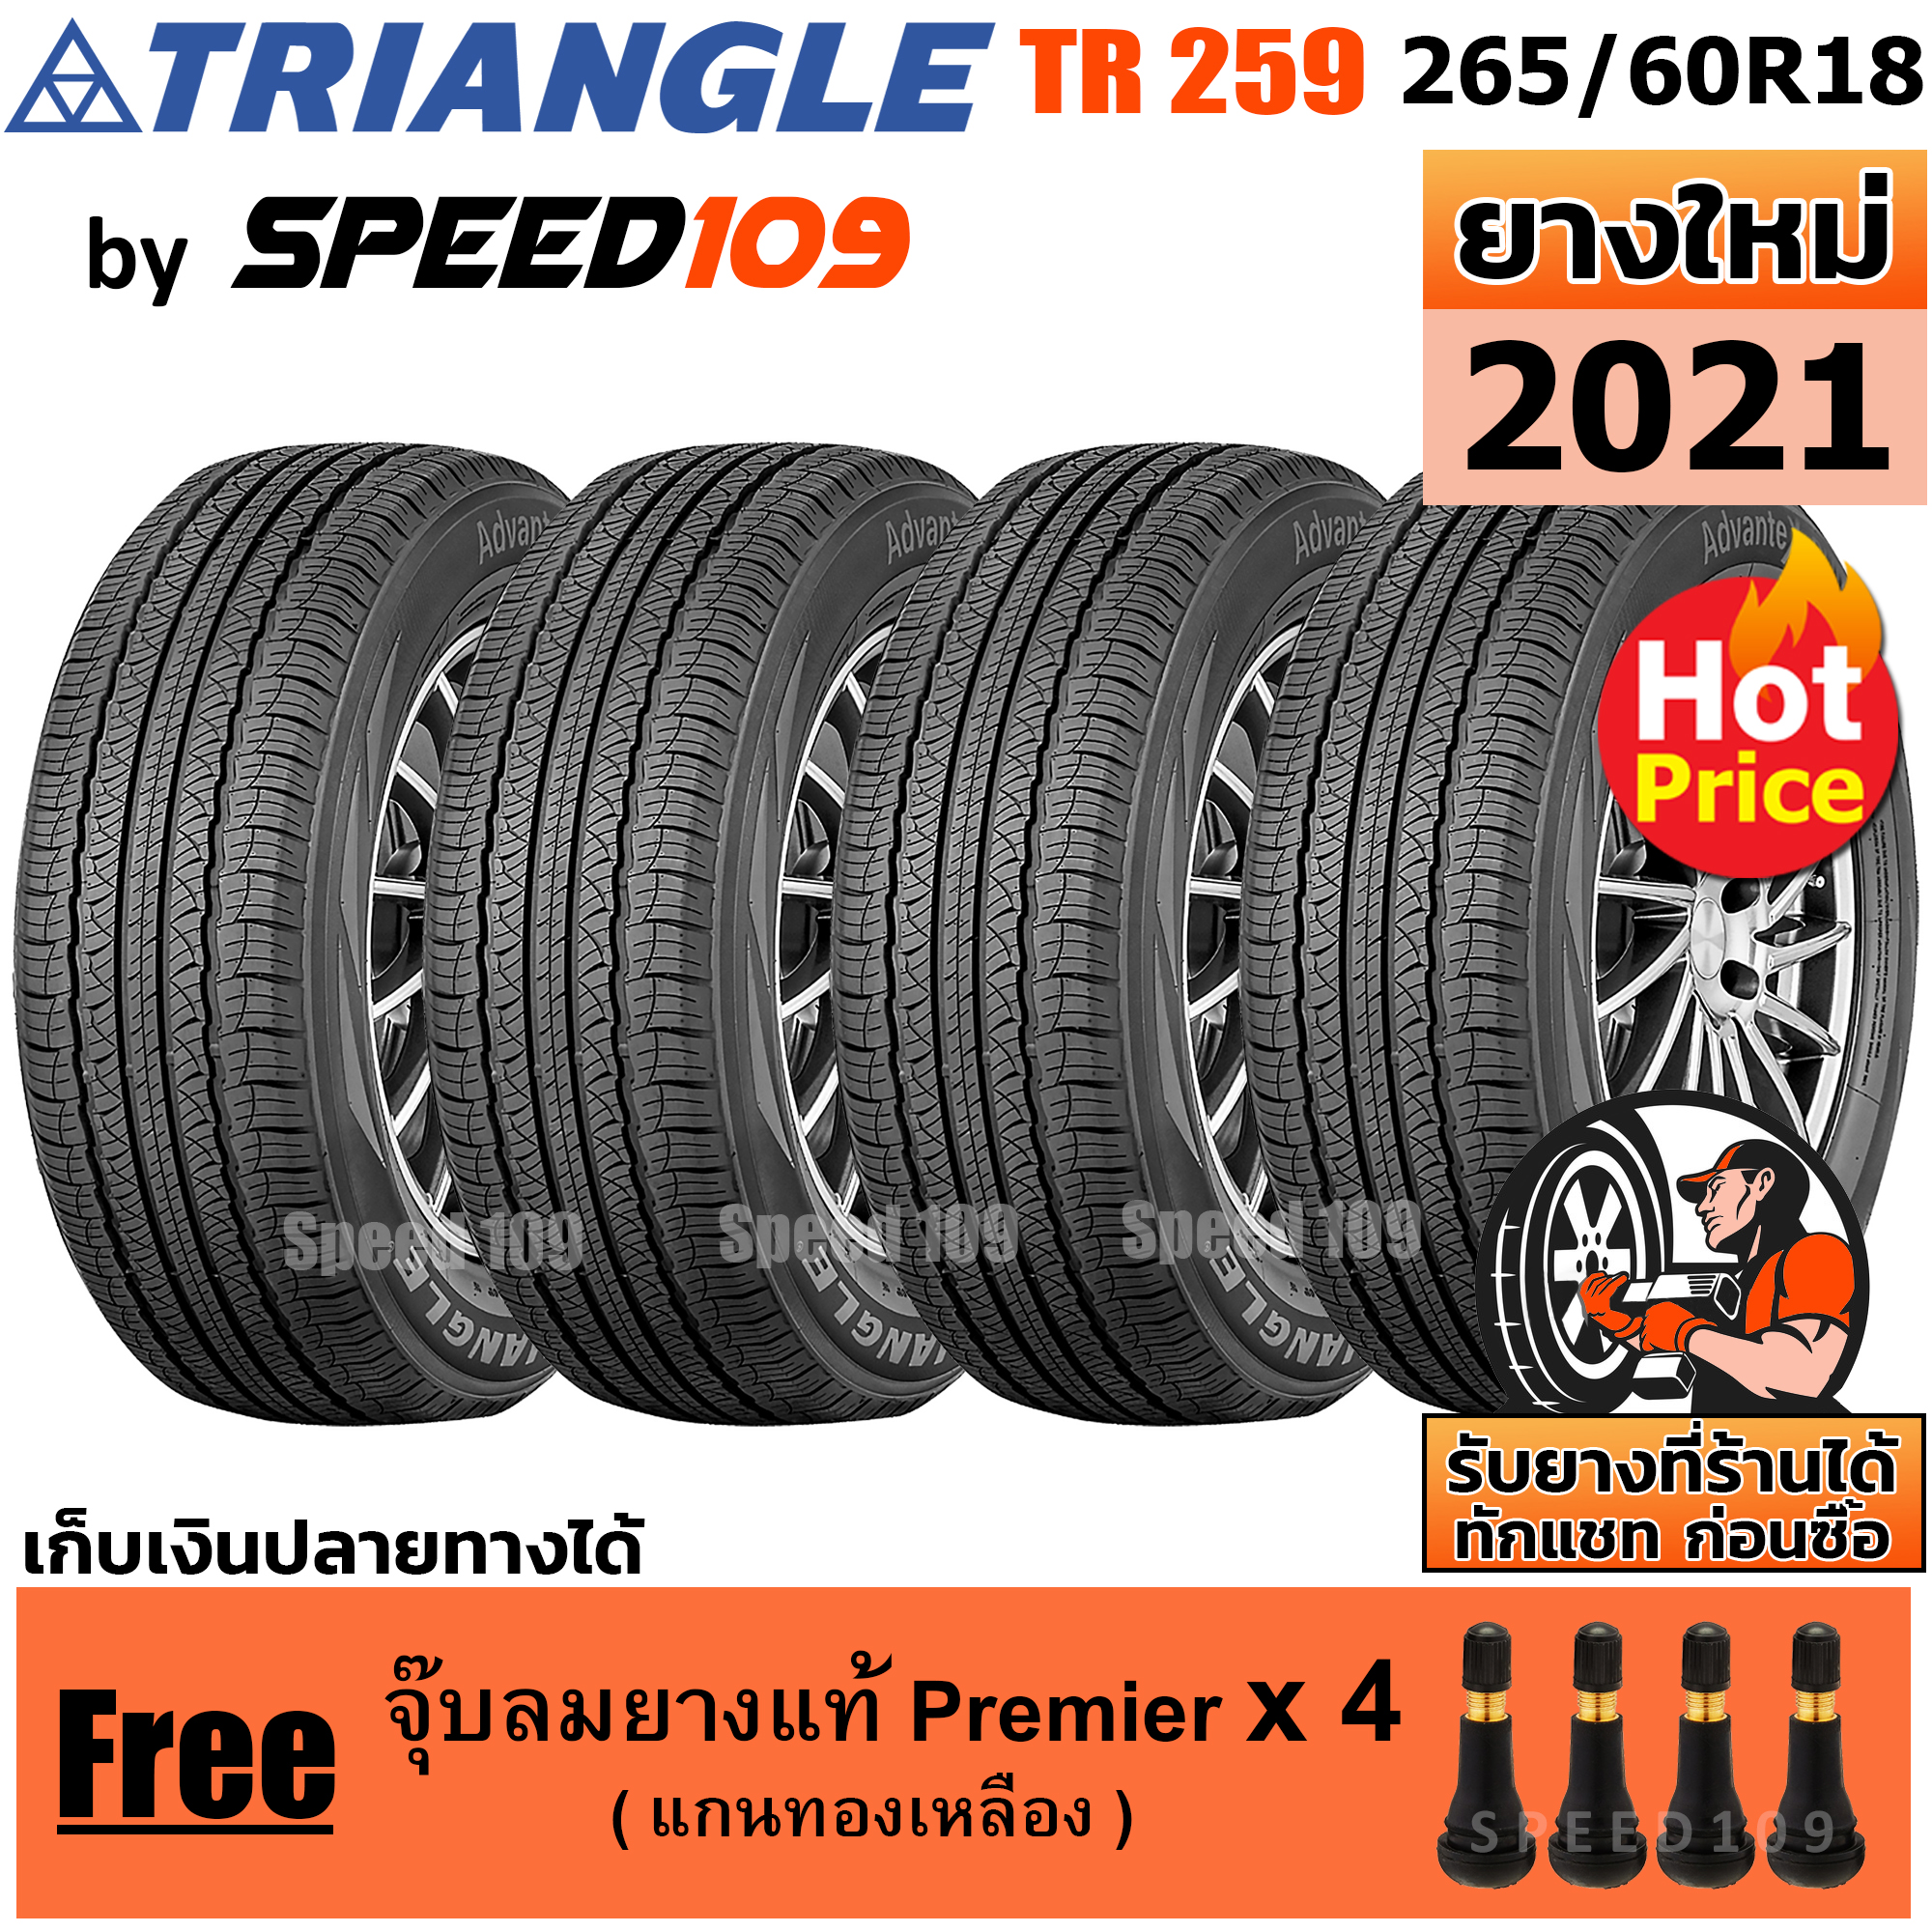 TRIANGLE ยางรถยนต์ ขอบ 18 ขนาด 265/60R18 รุ่น TR259 - 4 เส้น (ปี 2021)